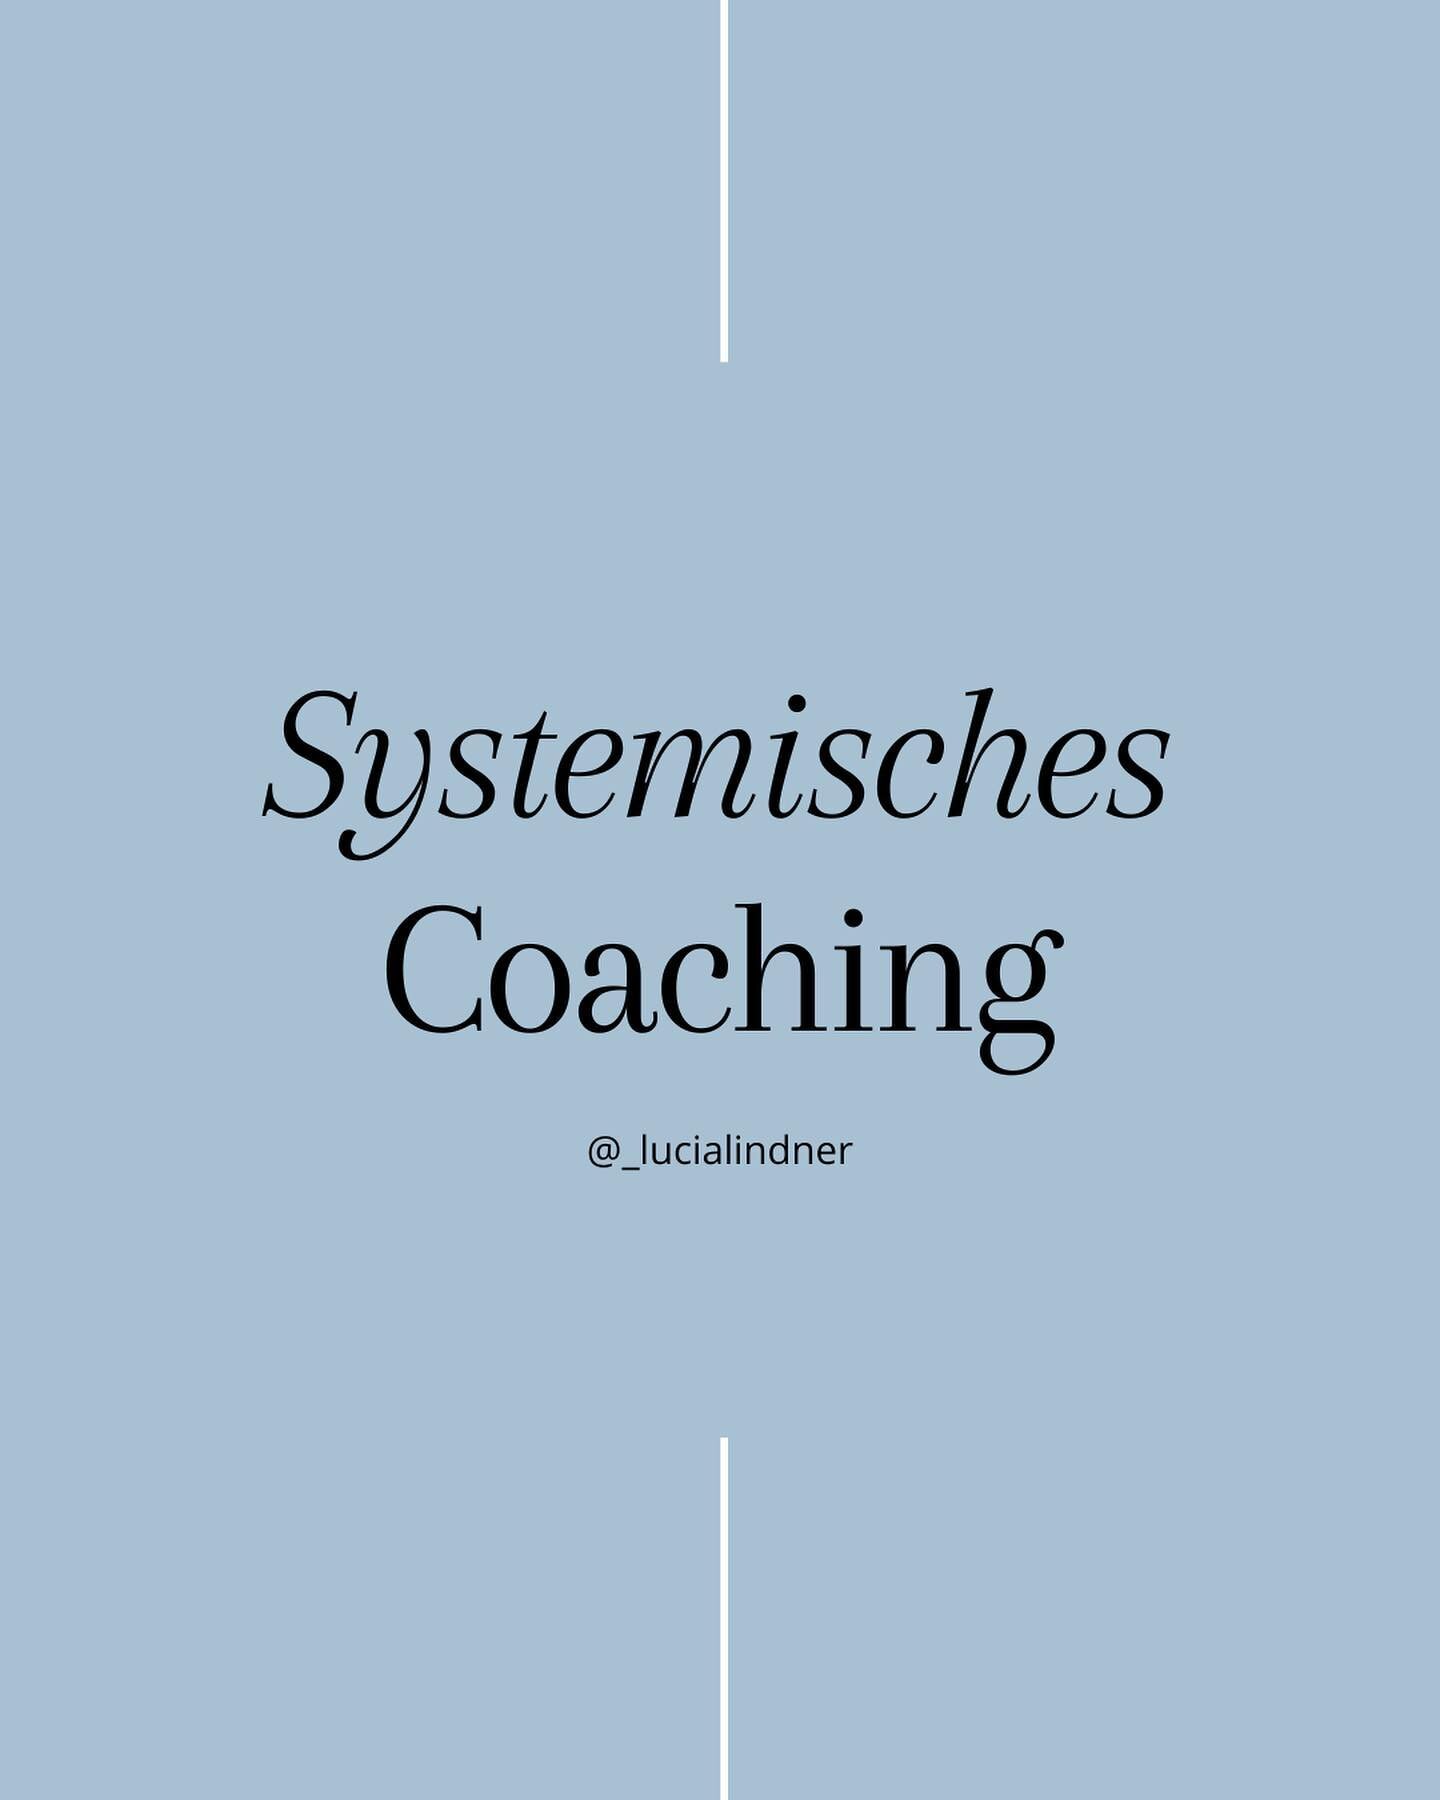 Was ist SYSTEMISCHES COACHING?

💡 Es ist eine Art des Coachings, die das gesamte System in den Fokus nimmt, in dem wir uns bewegen.

🌿 Stellt dir vor, dass deine Probleme und Ziele nicht isoliert betrachtet werden, sondern im Kontext deiner Beziehu